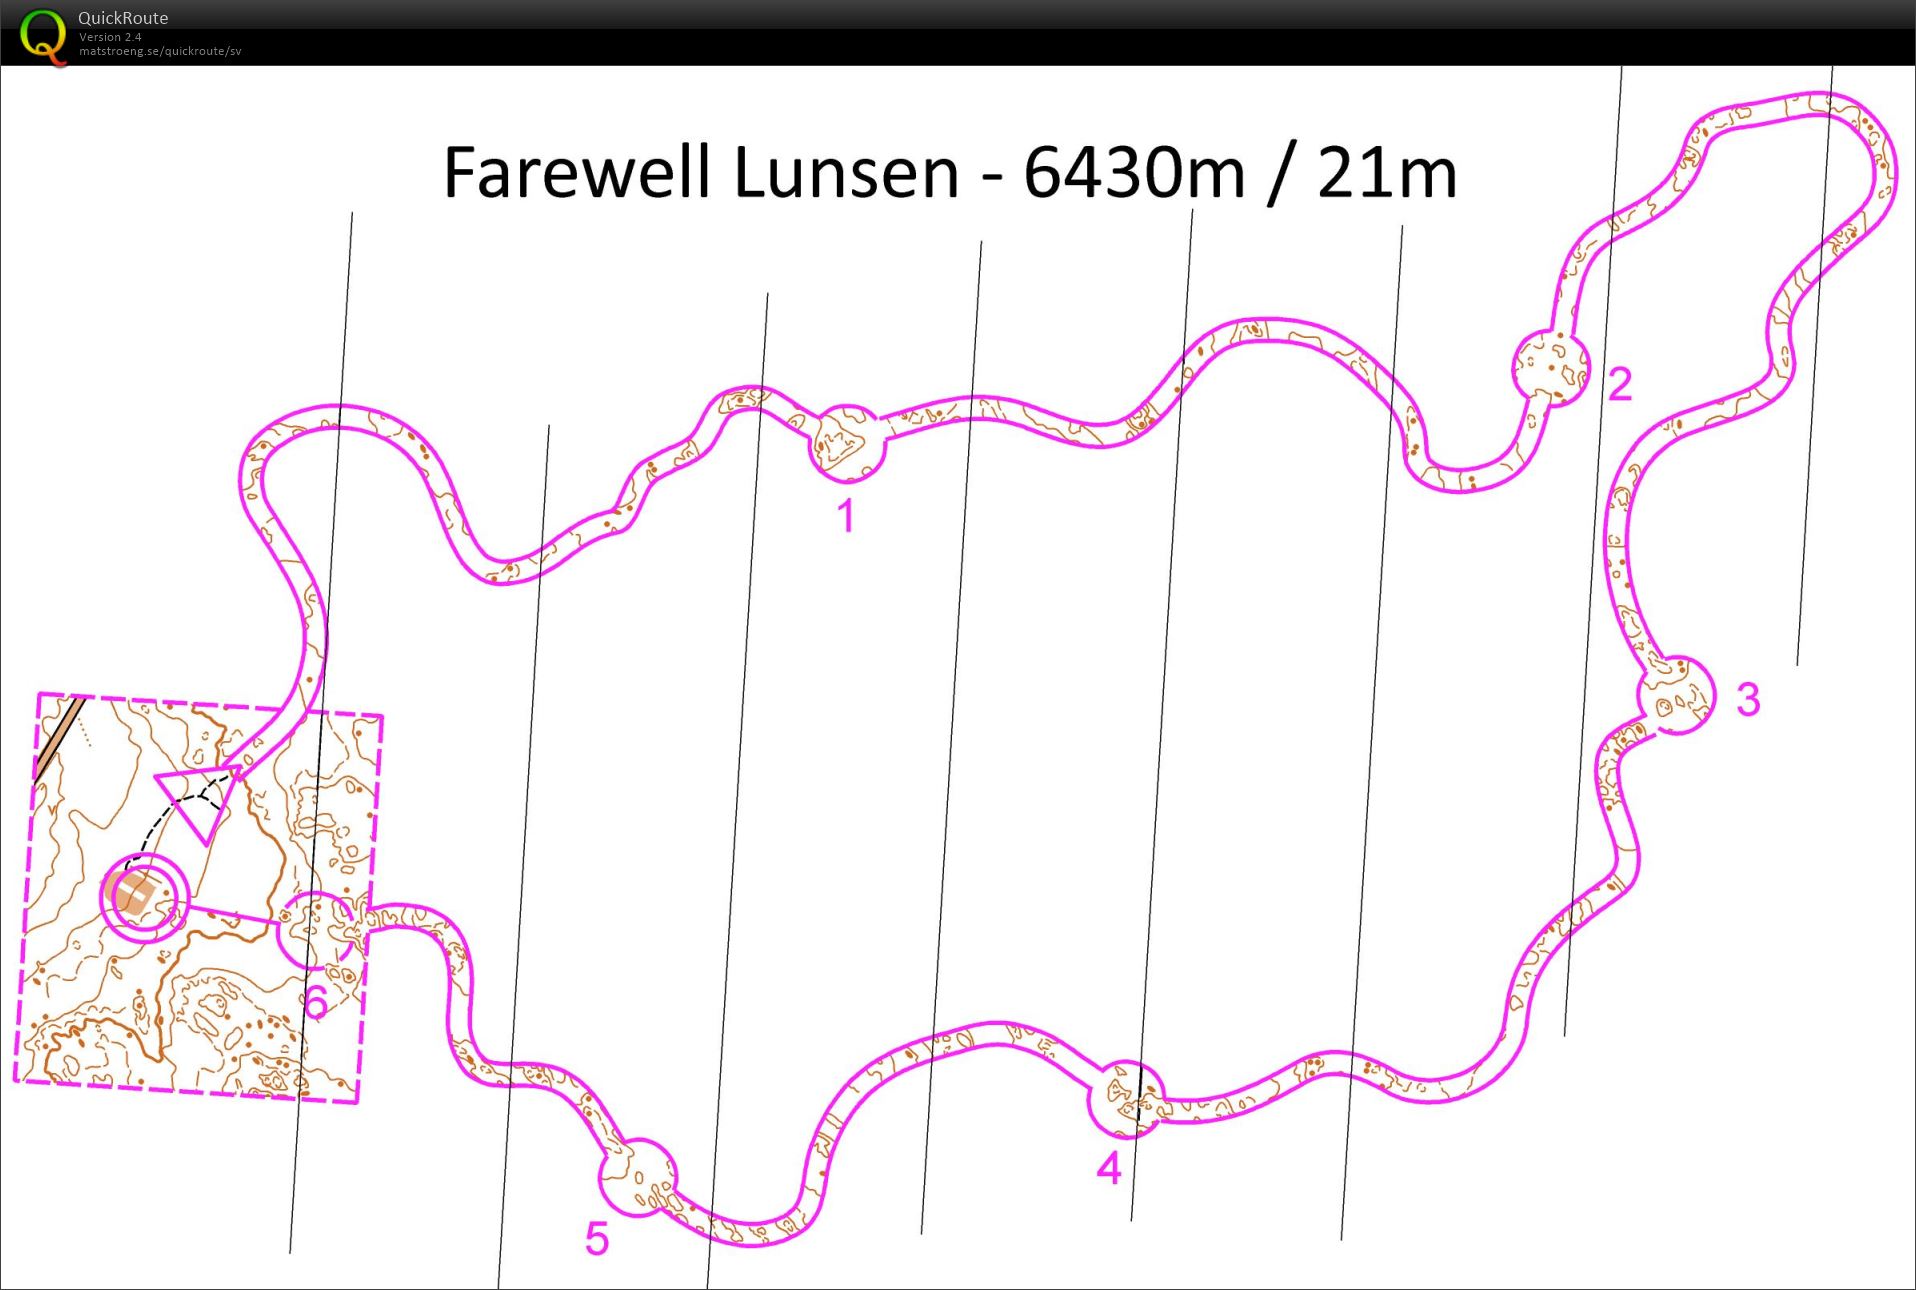 Farewell Lunsen (26-12-2015)